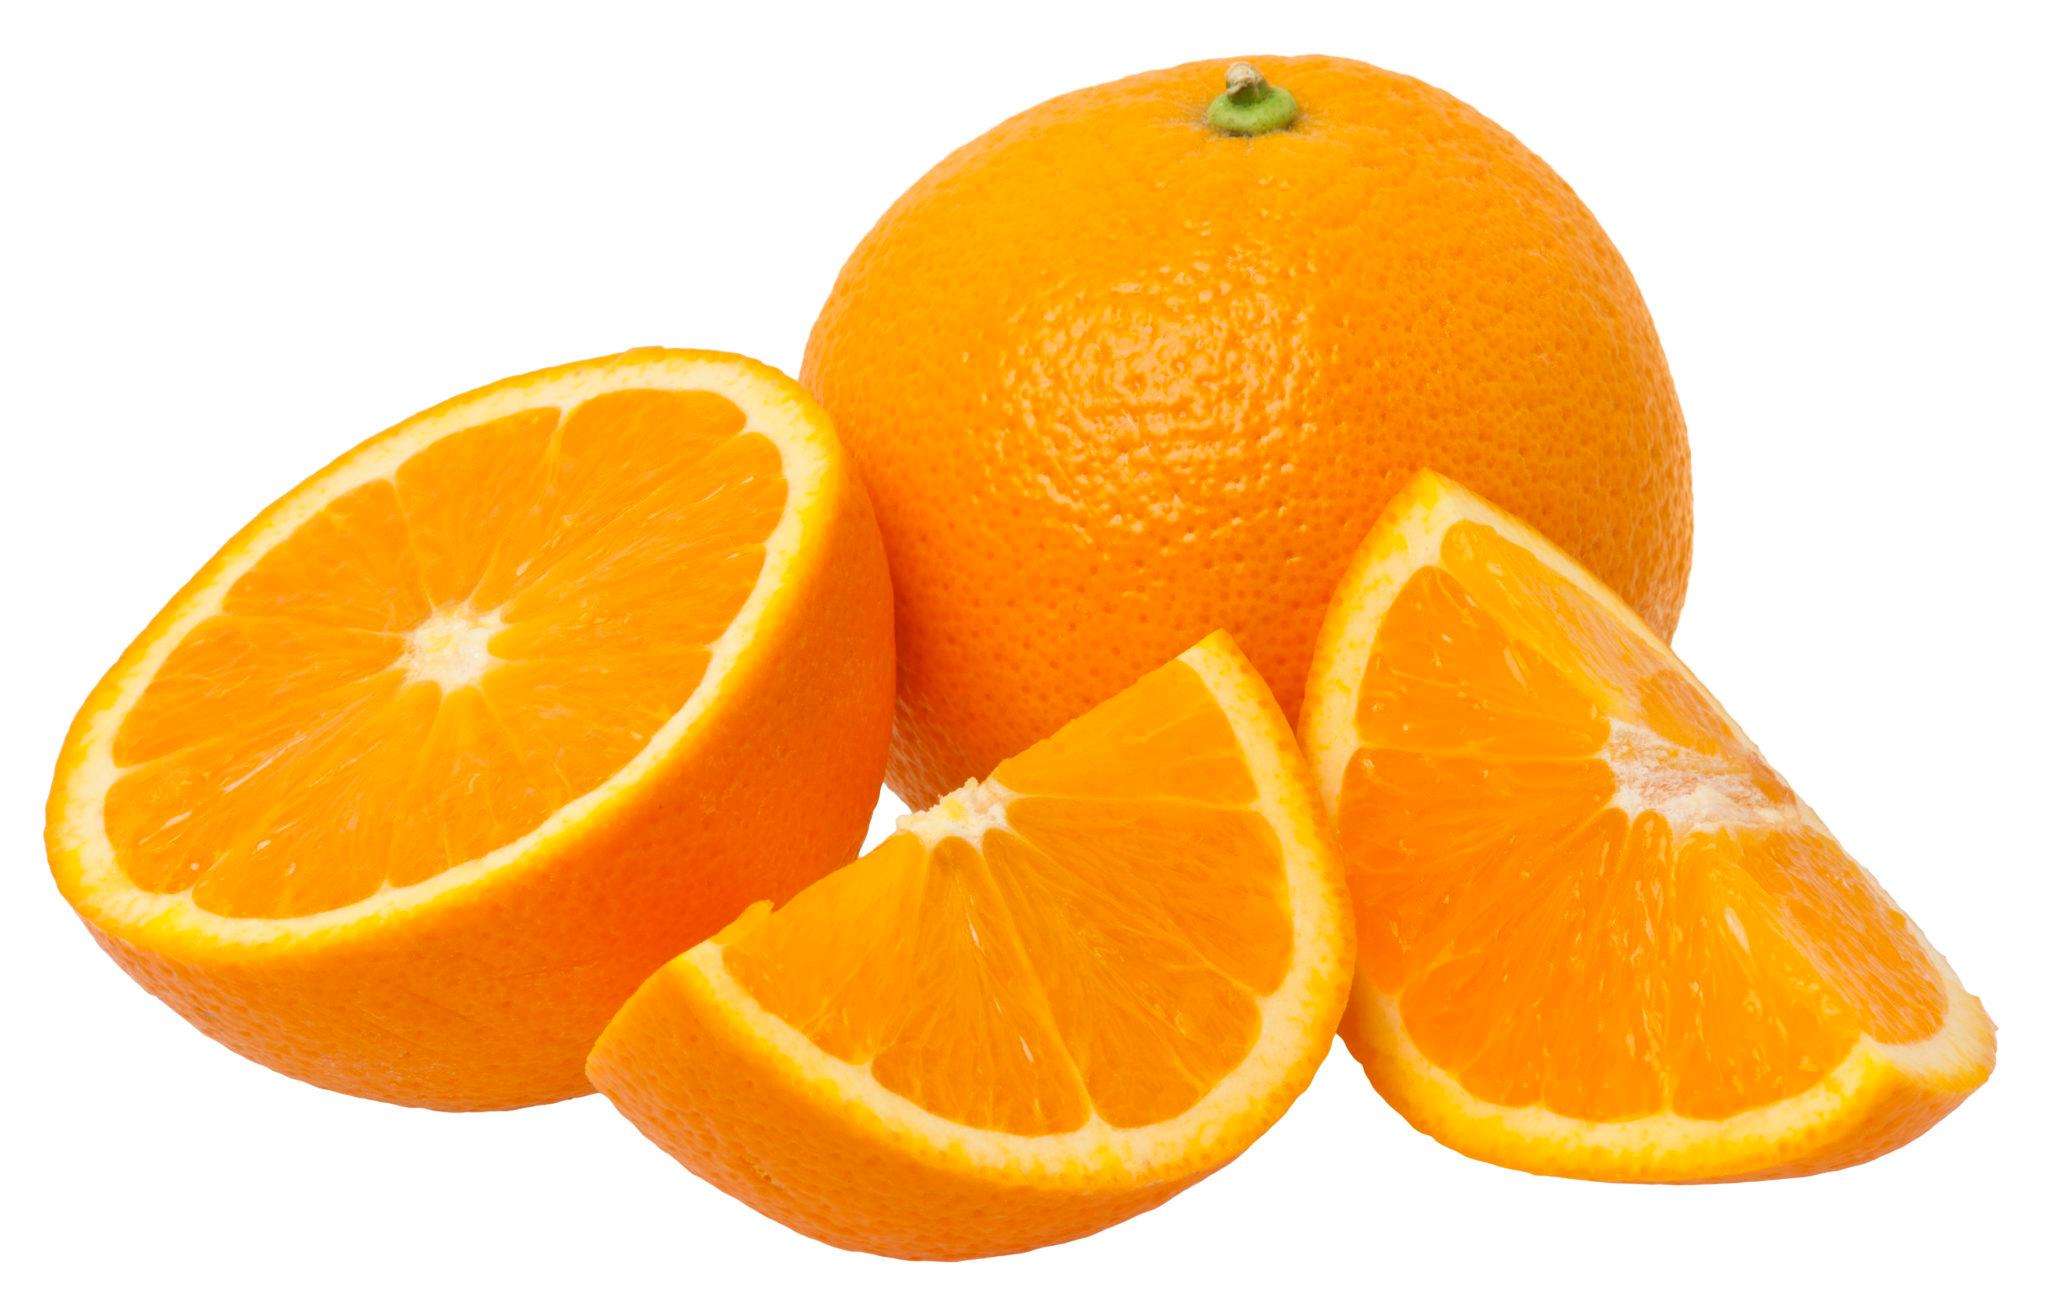 संतरा ही नही संतरे का छिलका भी है सेहत के लिए फायदे मंद